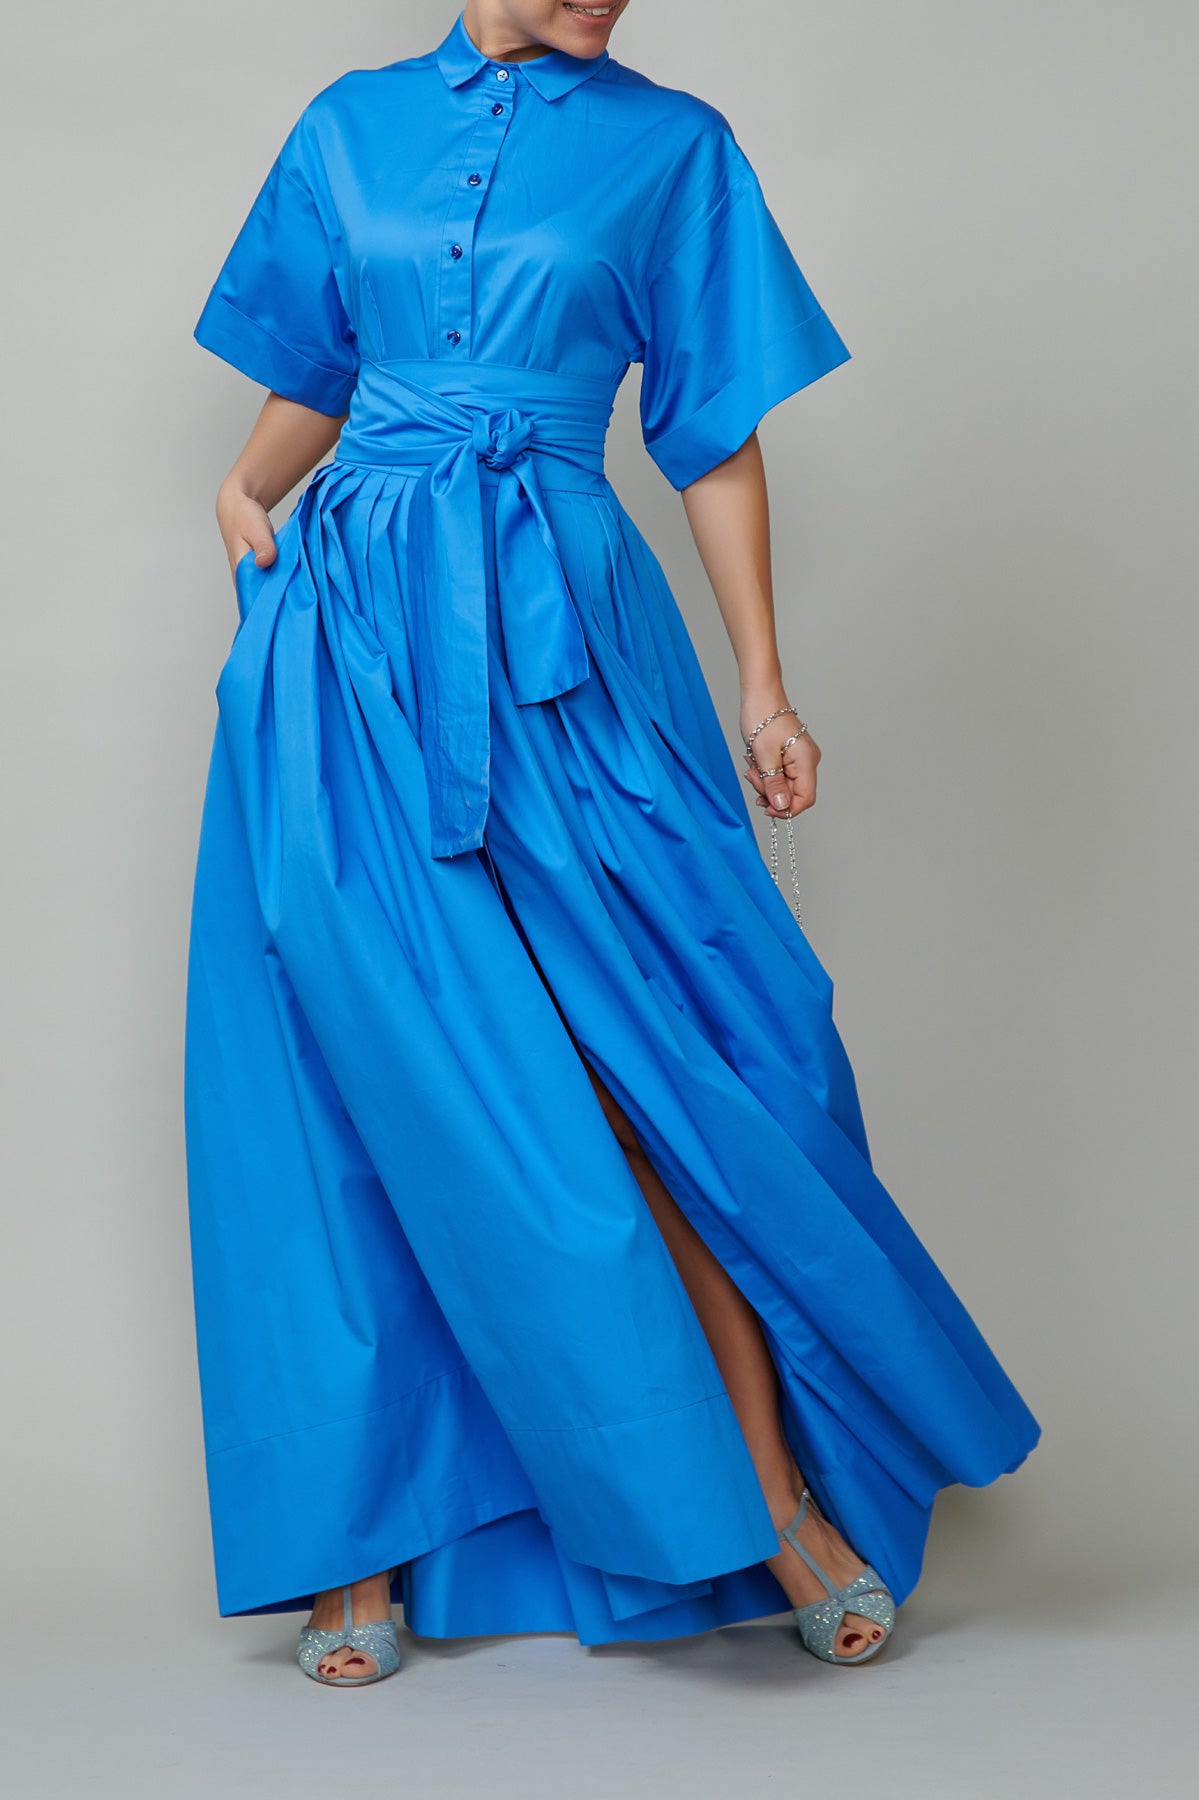 Evening dress, long, made of blue cotton